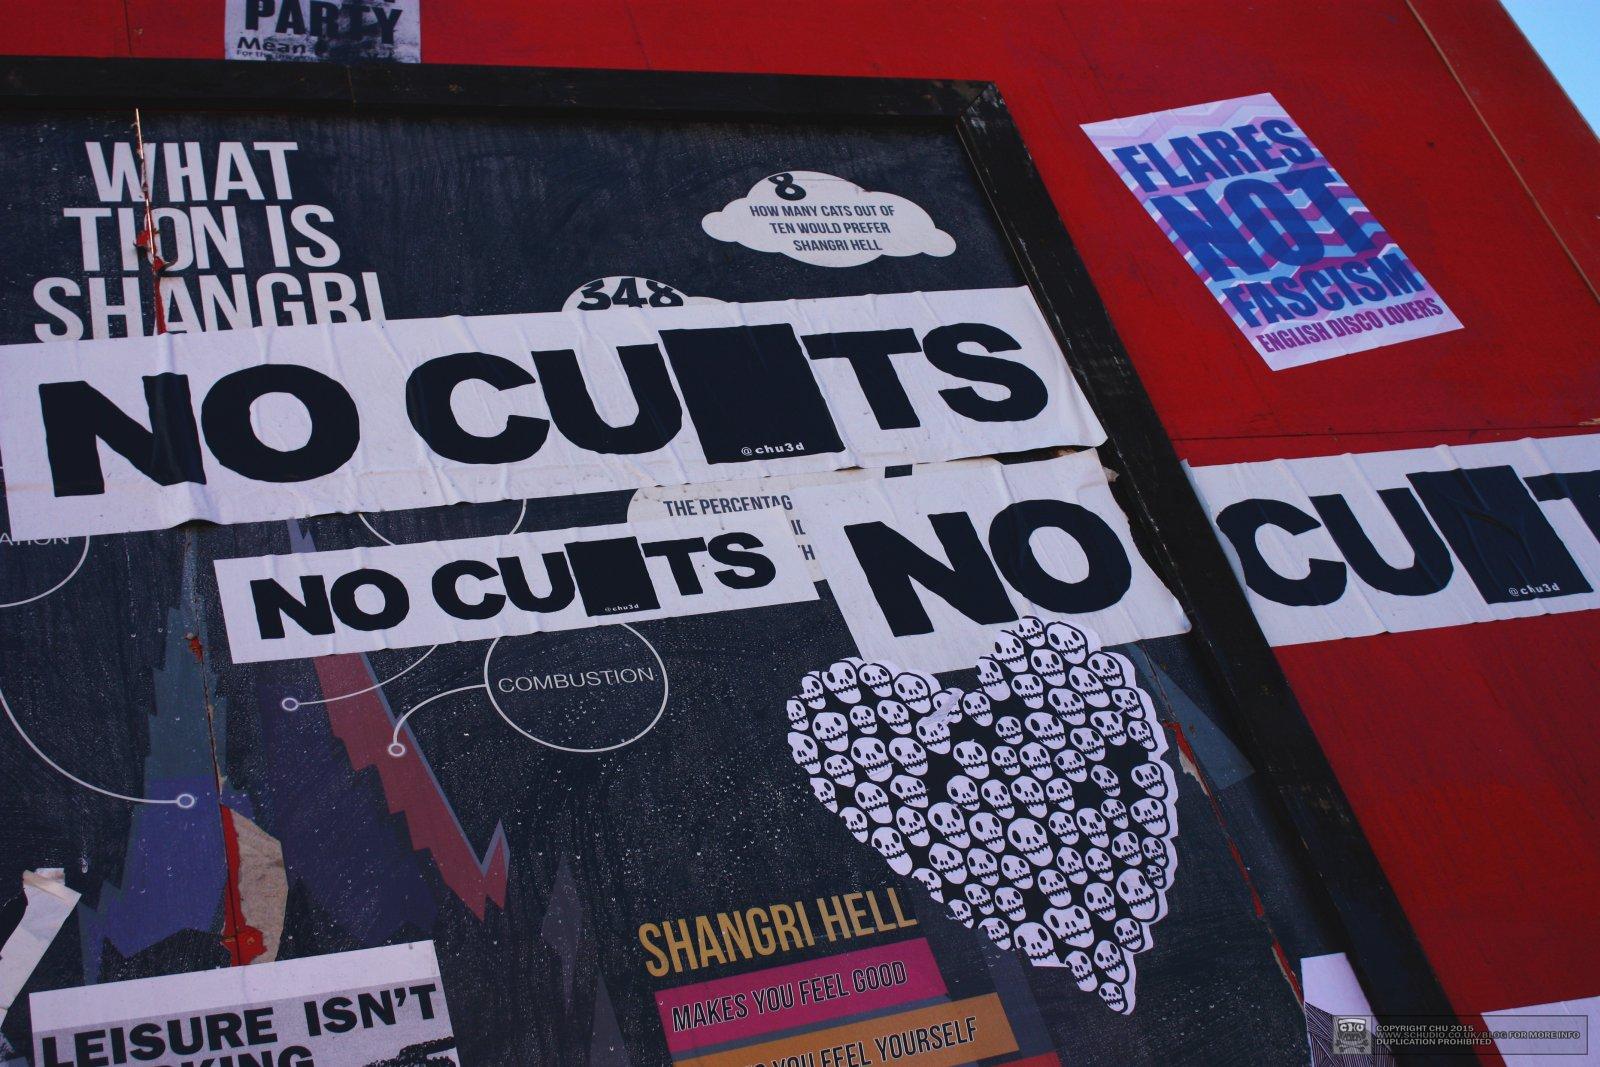 NO CUTS - Glastonbury Festival 2015